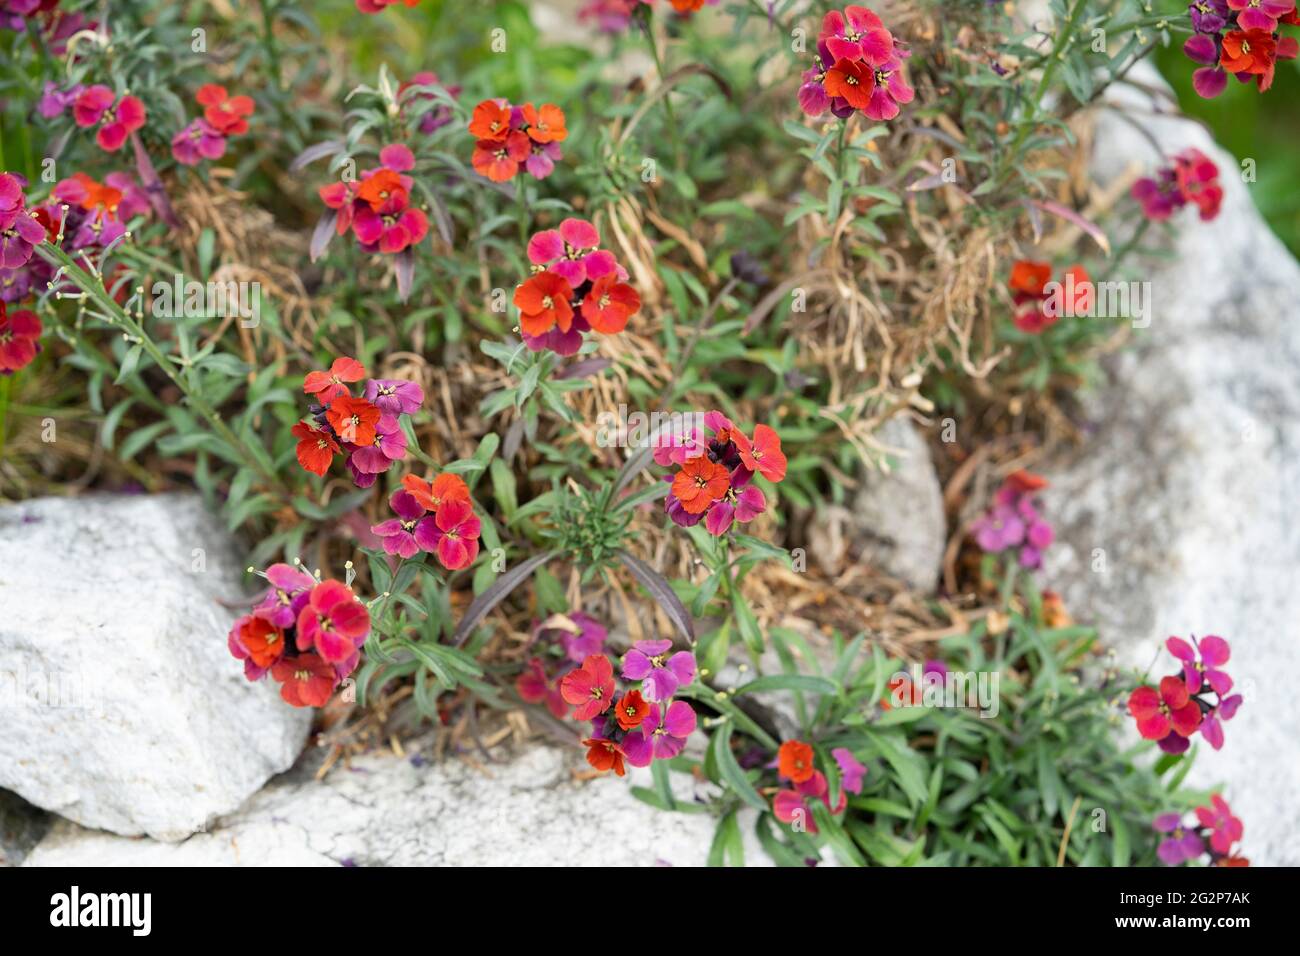 Erysimum (nome comune Wallflower) 'Red Jep' sono piante in fiore della famiglia Brassicaceae con racemi densi di 4 fiori petallati. Austria Foto Stock